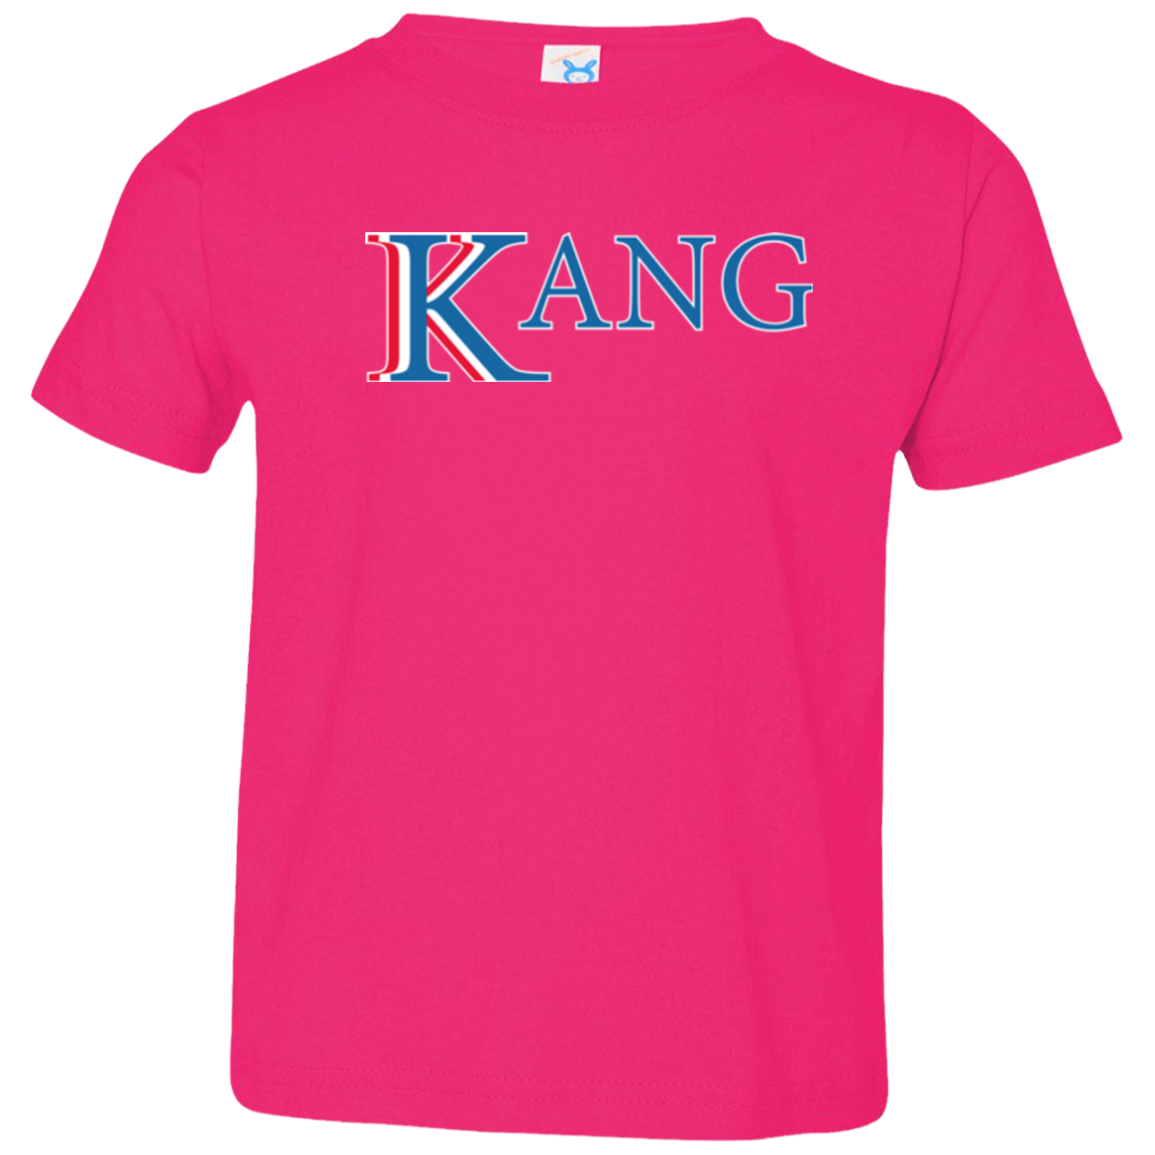 Vote for Kang Toddler Premium T-Shirt